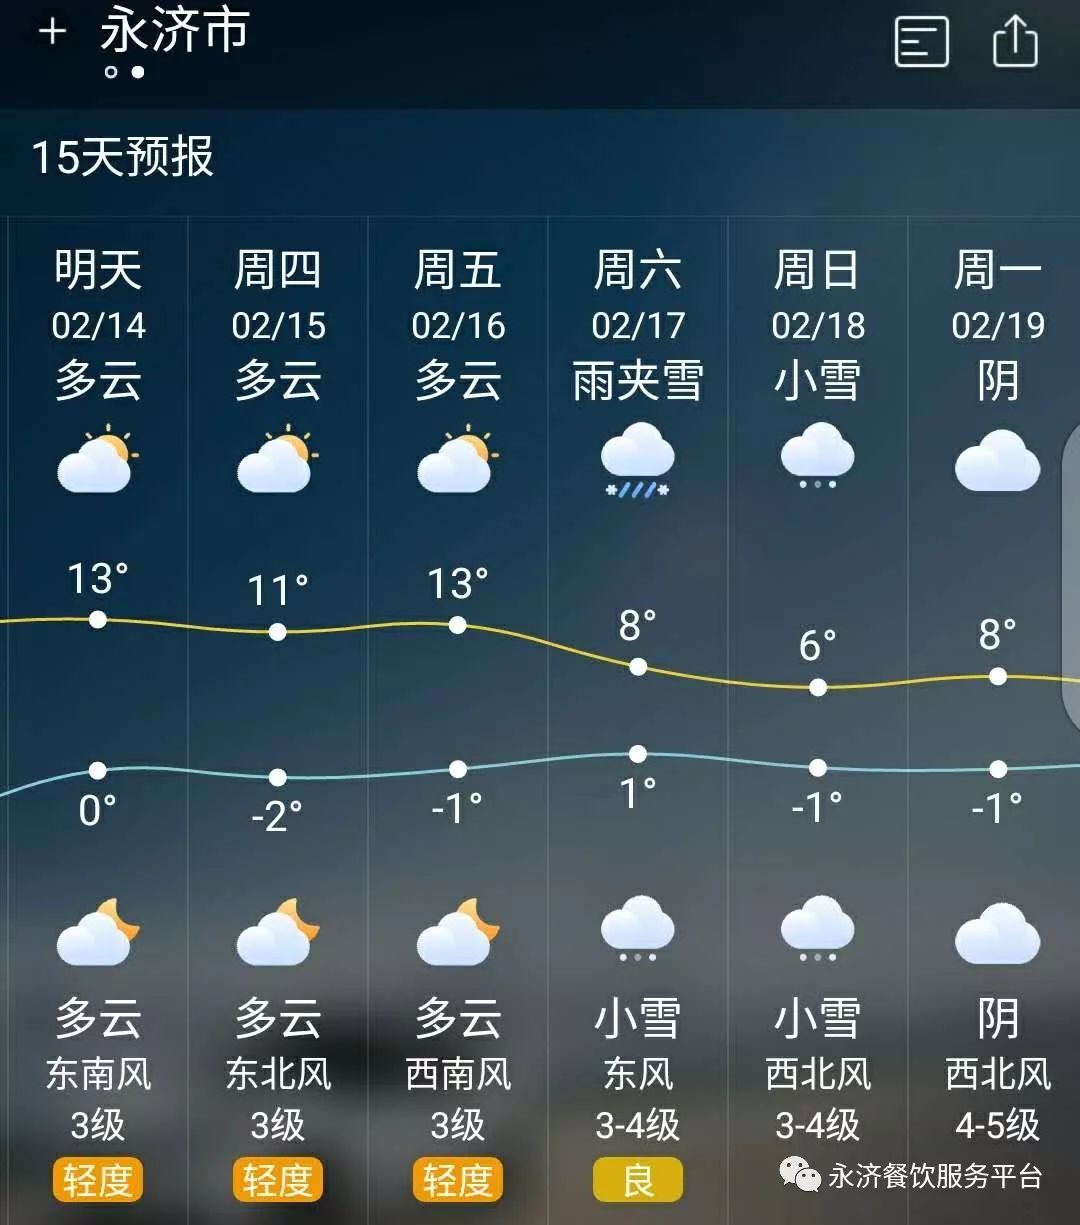 升温 降温 大雪,永济春节天气就像神经病!